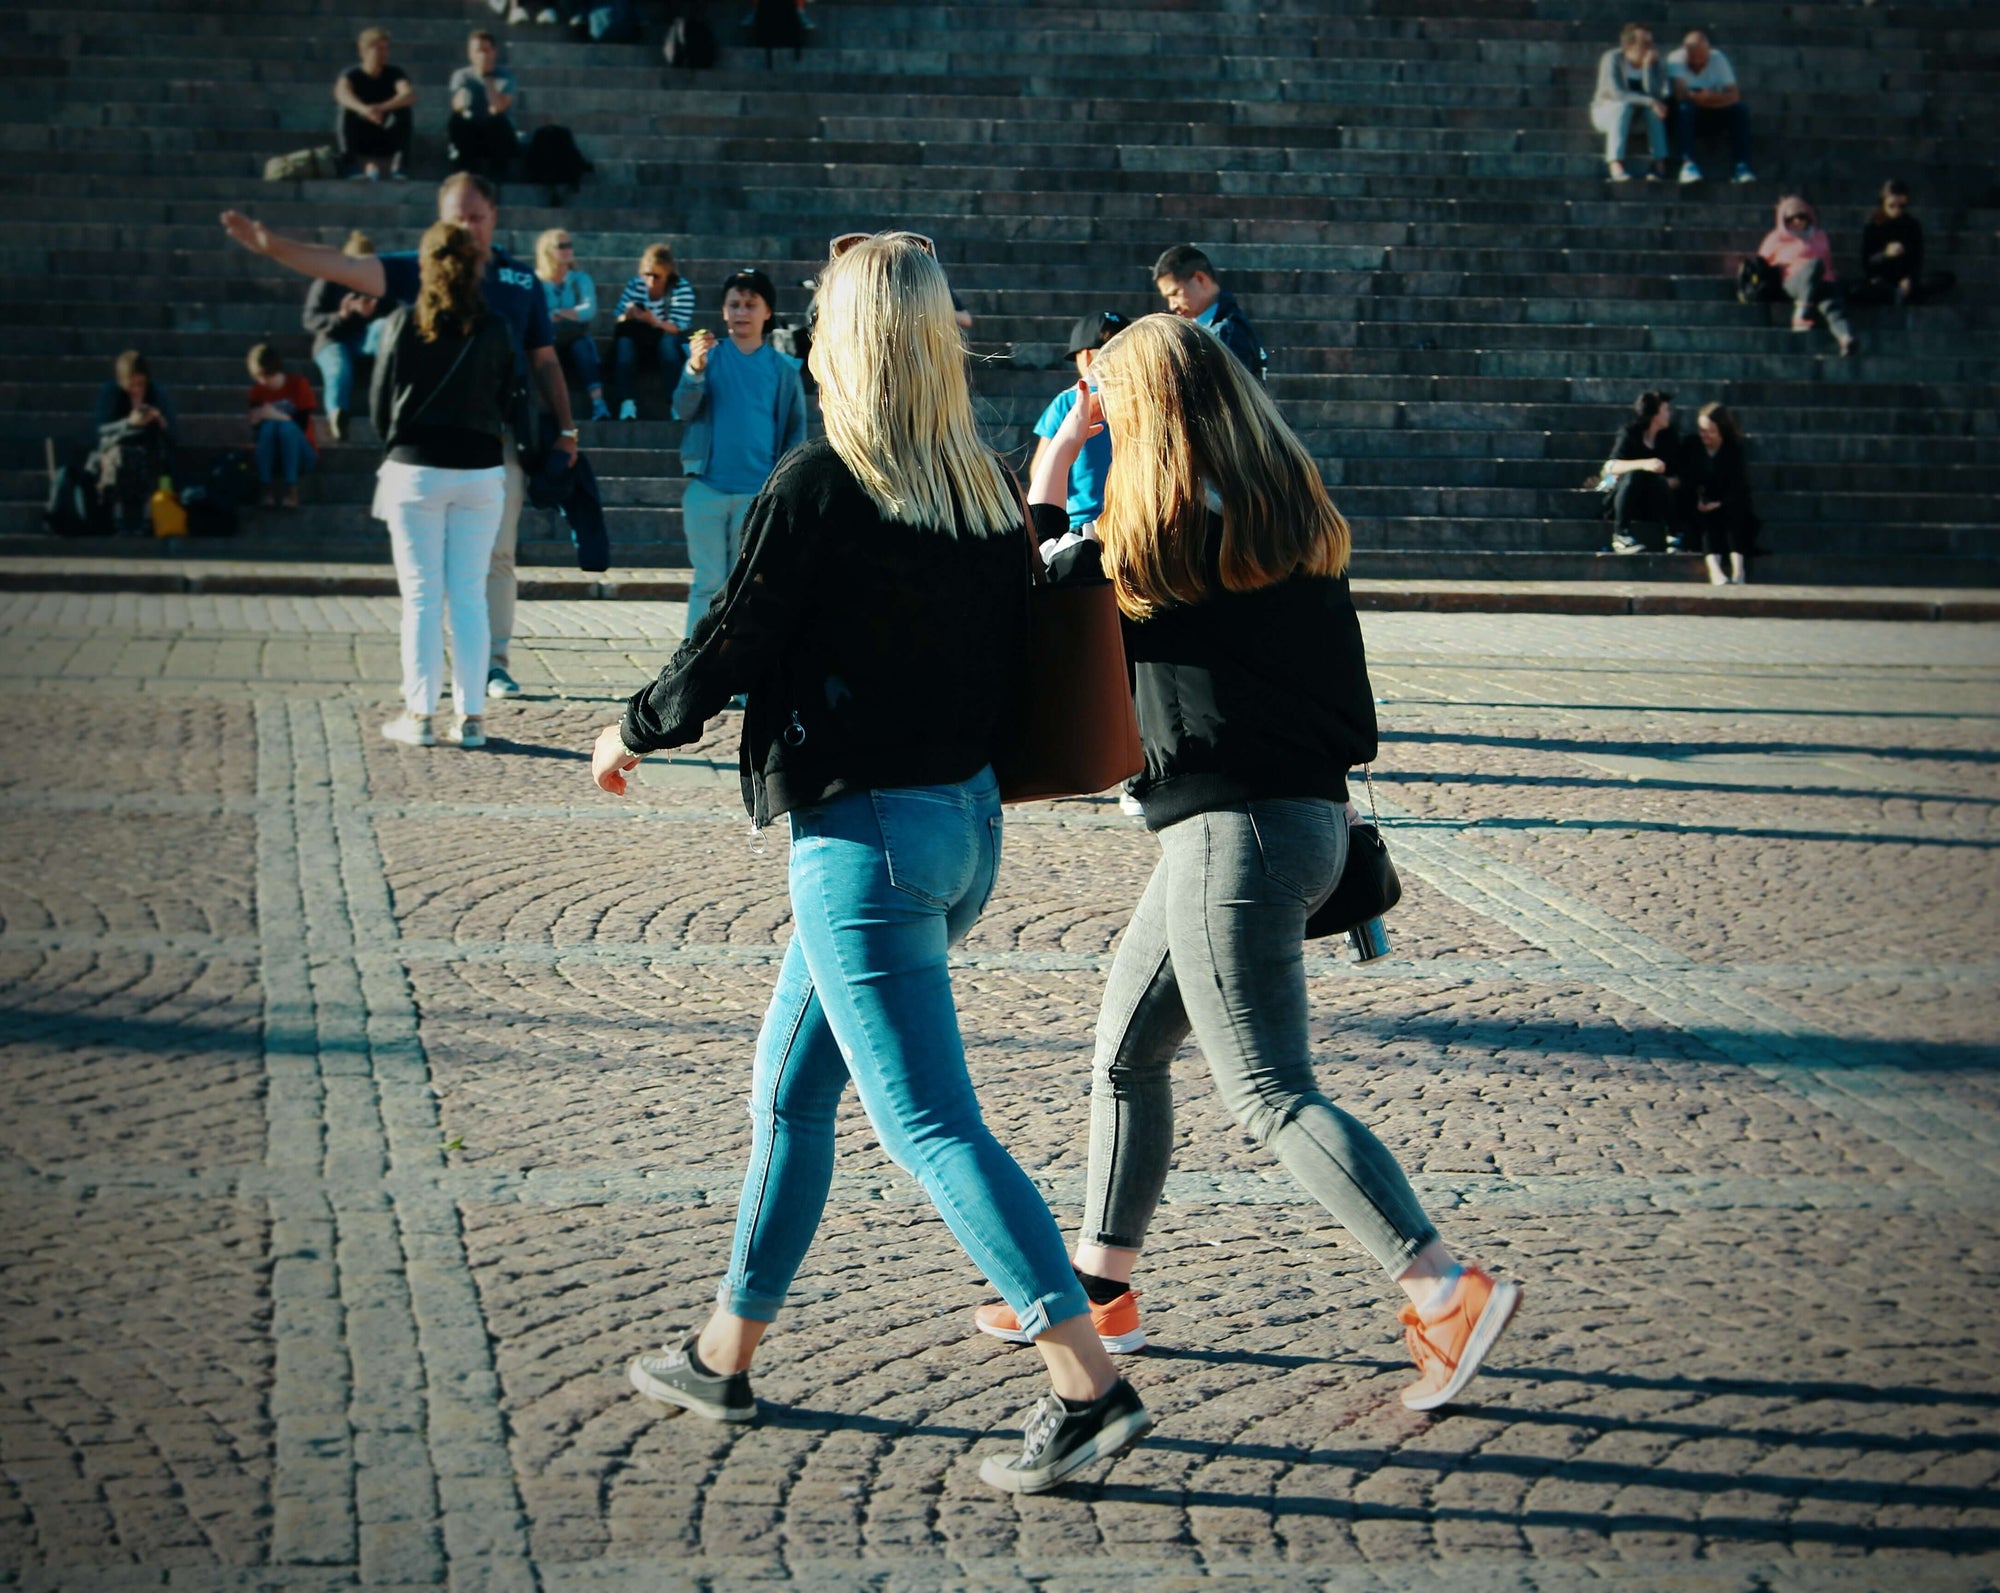 Two women walking in a city plaza.